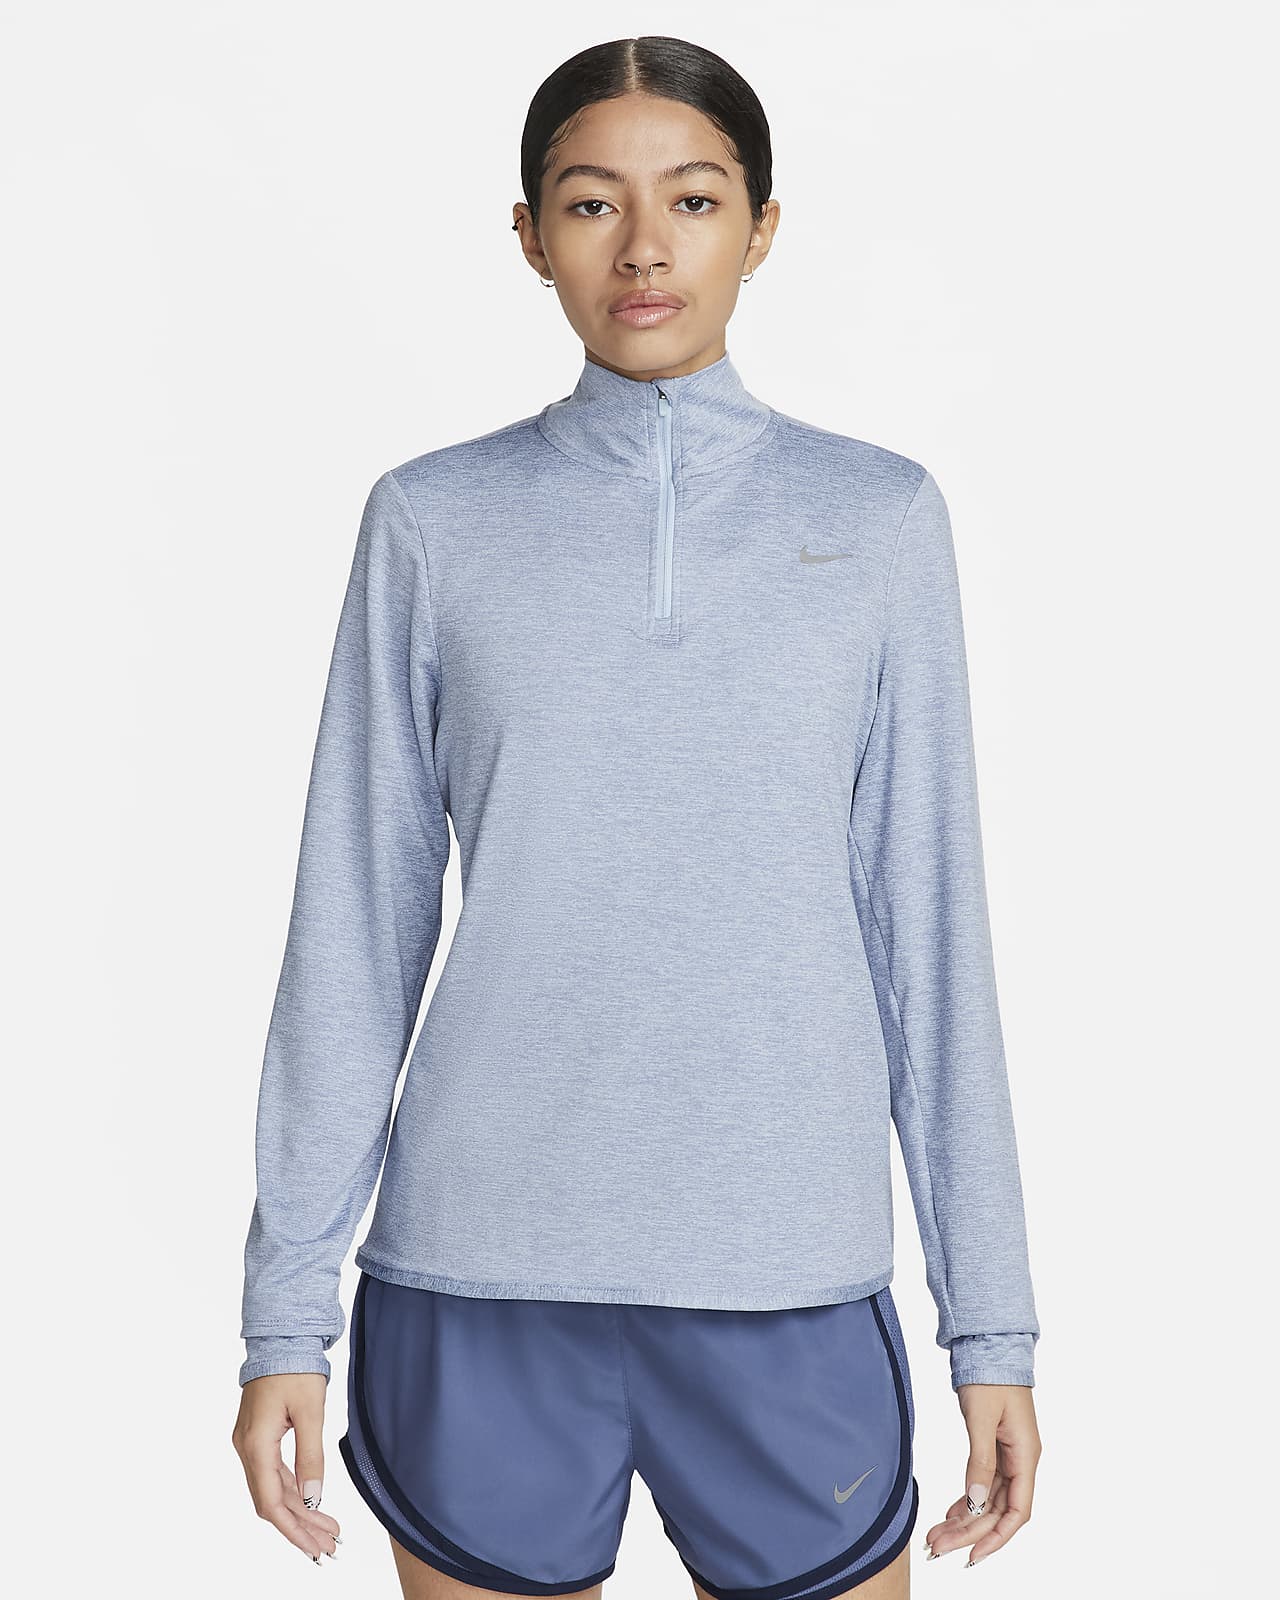 Nike Swift løpeoverdel med UV-beskyttelse og glidelås i halsen til dame